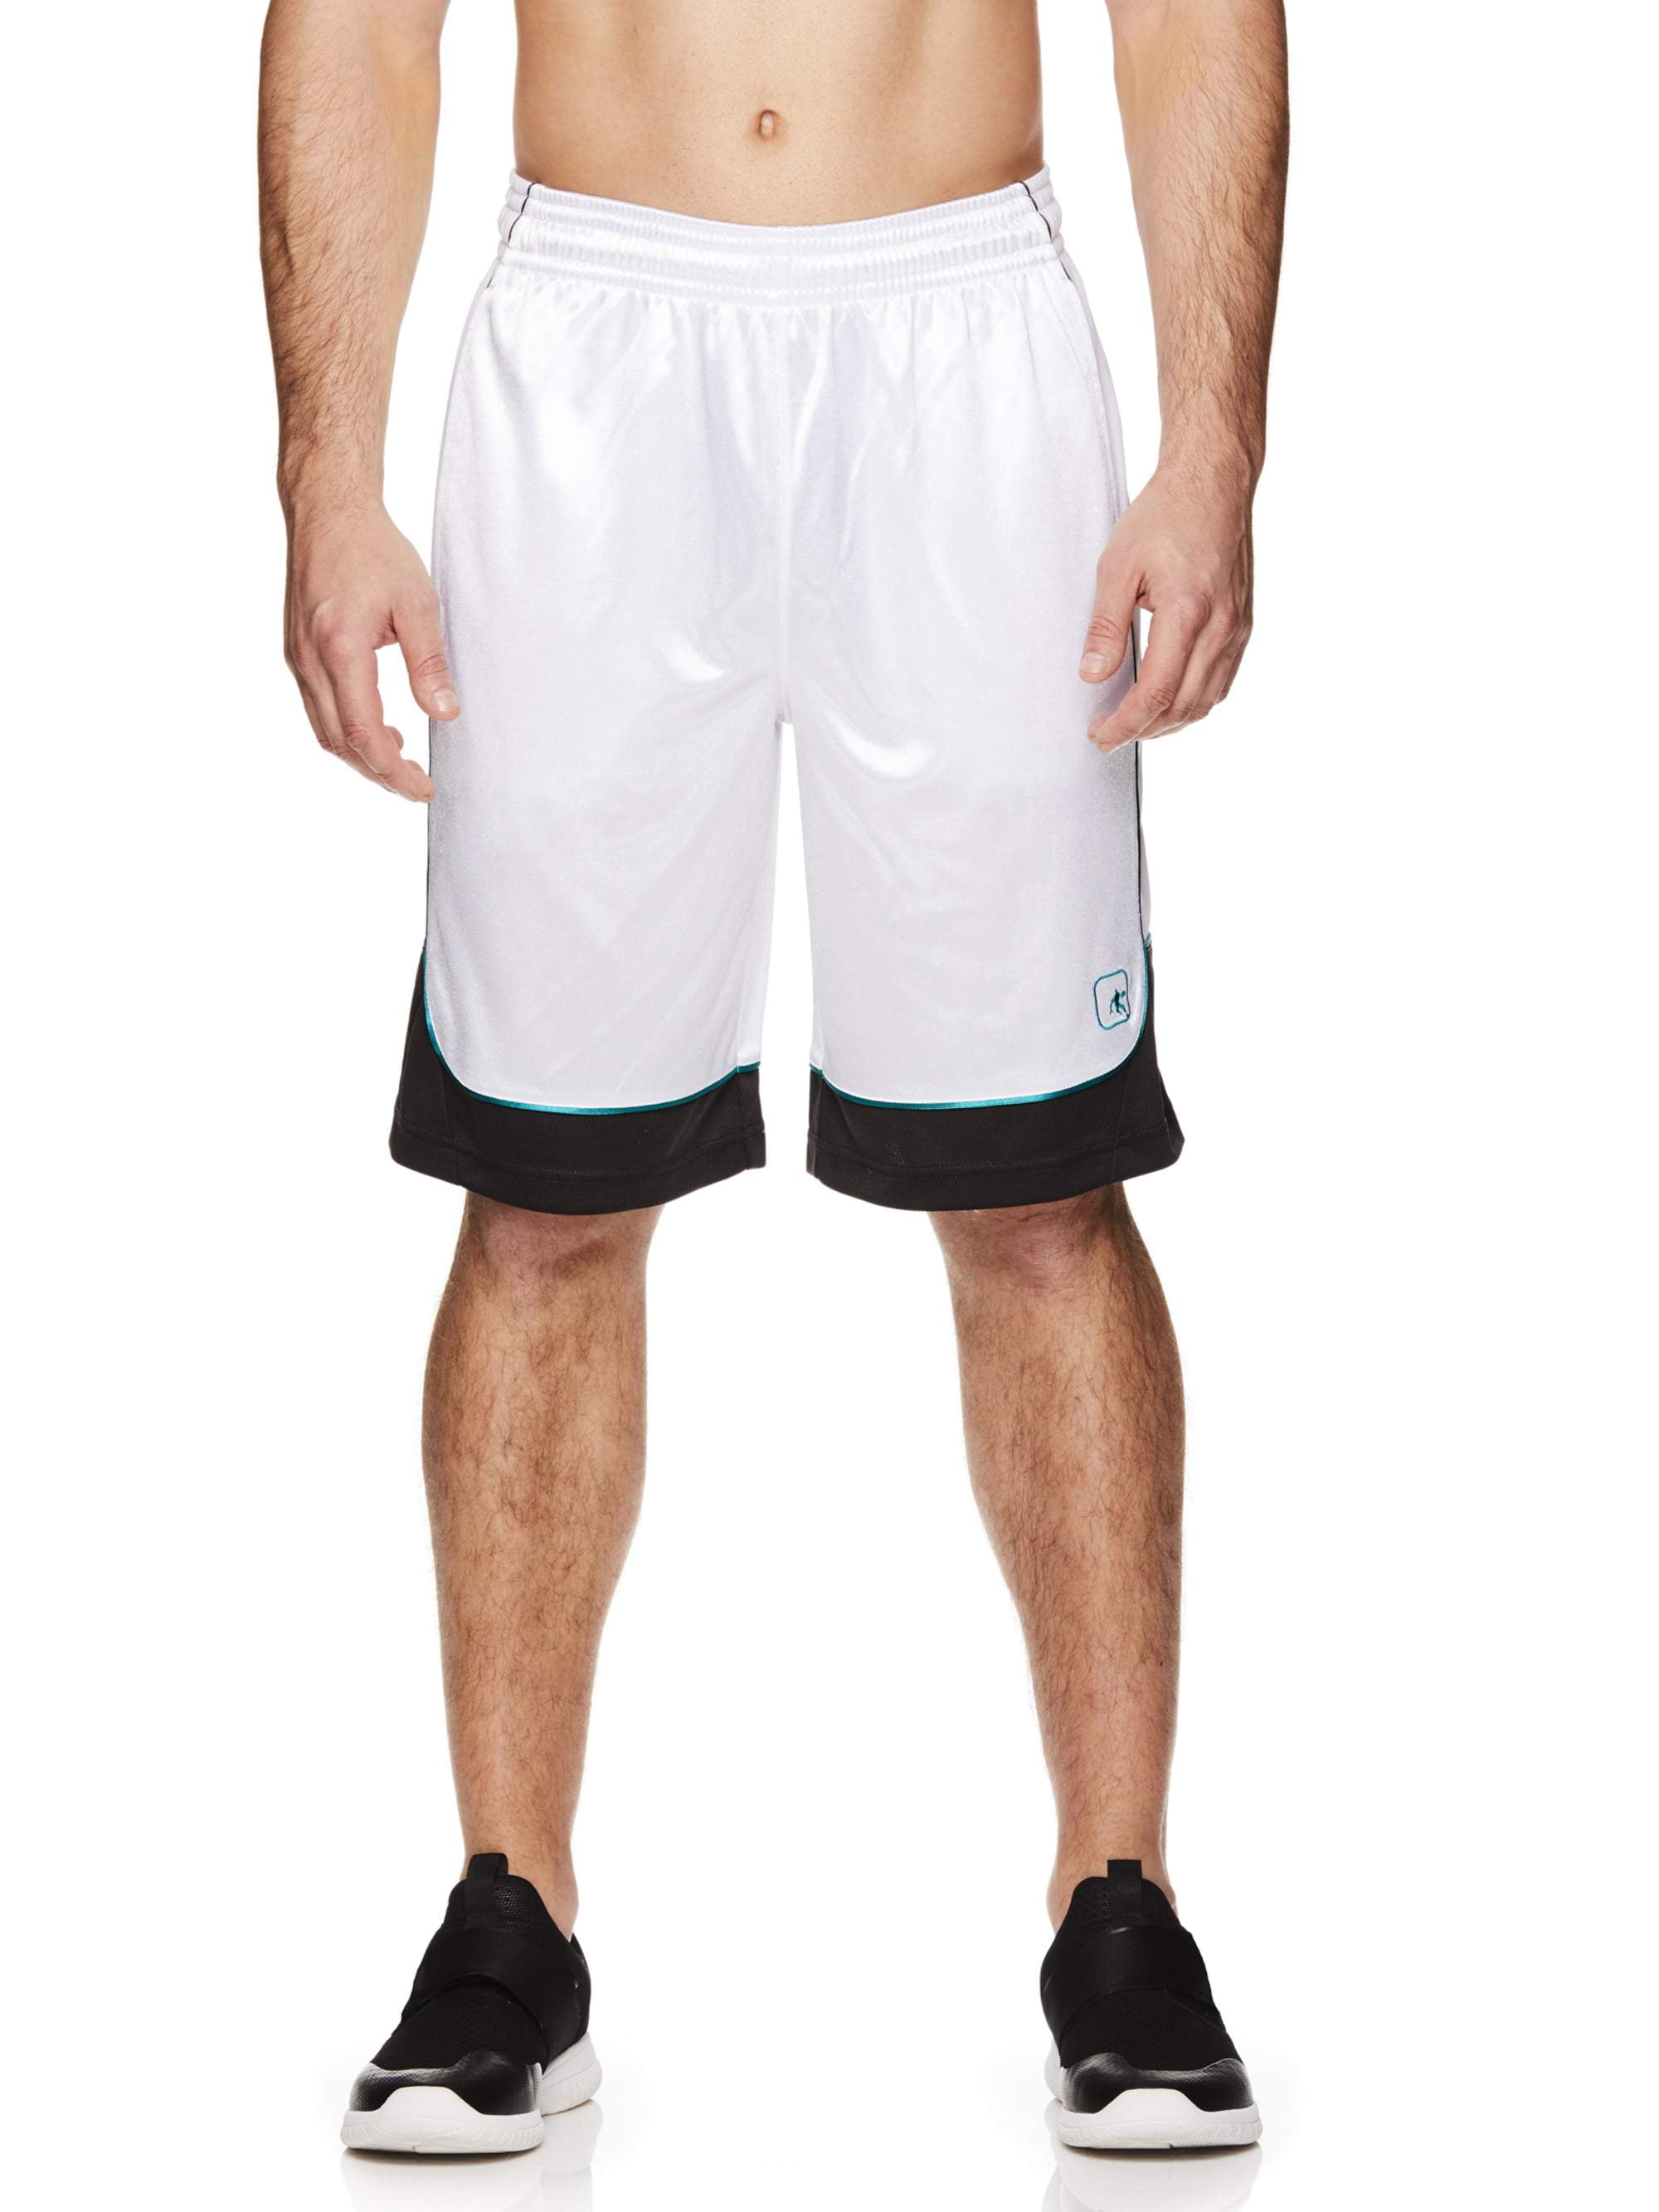 Colorblock Basketball Shorts 